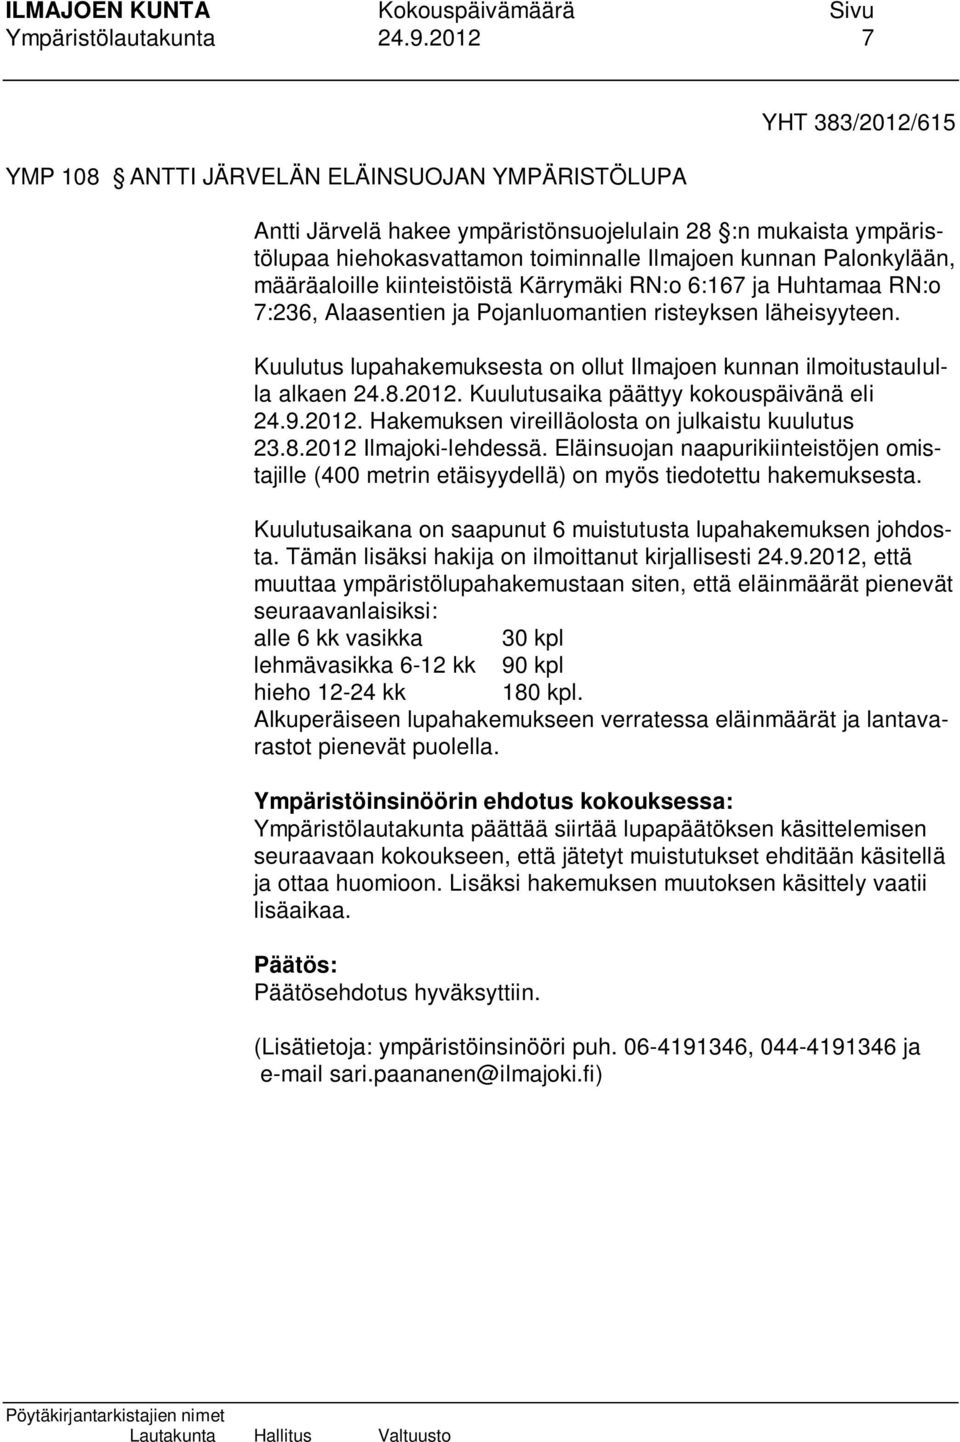 Palonkylään, määräaloille kiinteistöistä Kärrymäki RN:o 6:167 ja Huhtamaa RN:o 7:236, Alaasentien ja Pojanluomantien risteyksen läheisyyteen.